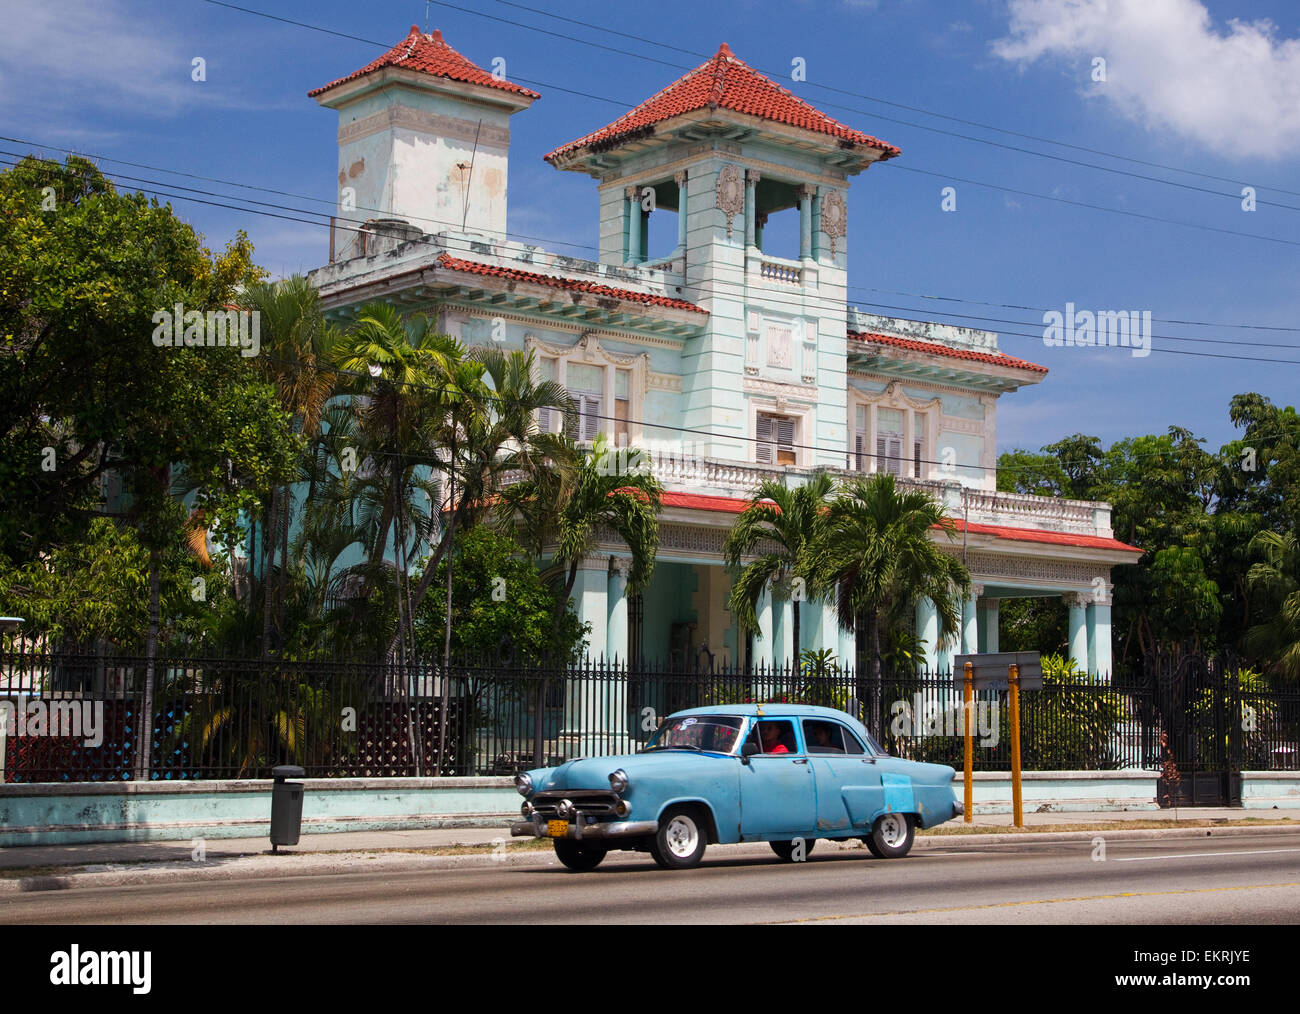 A classic american retro car passes a colonial style villa in Havana Stock Photo